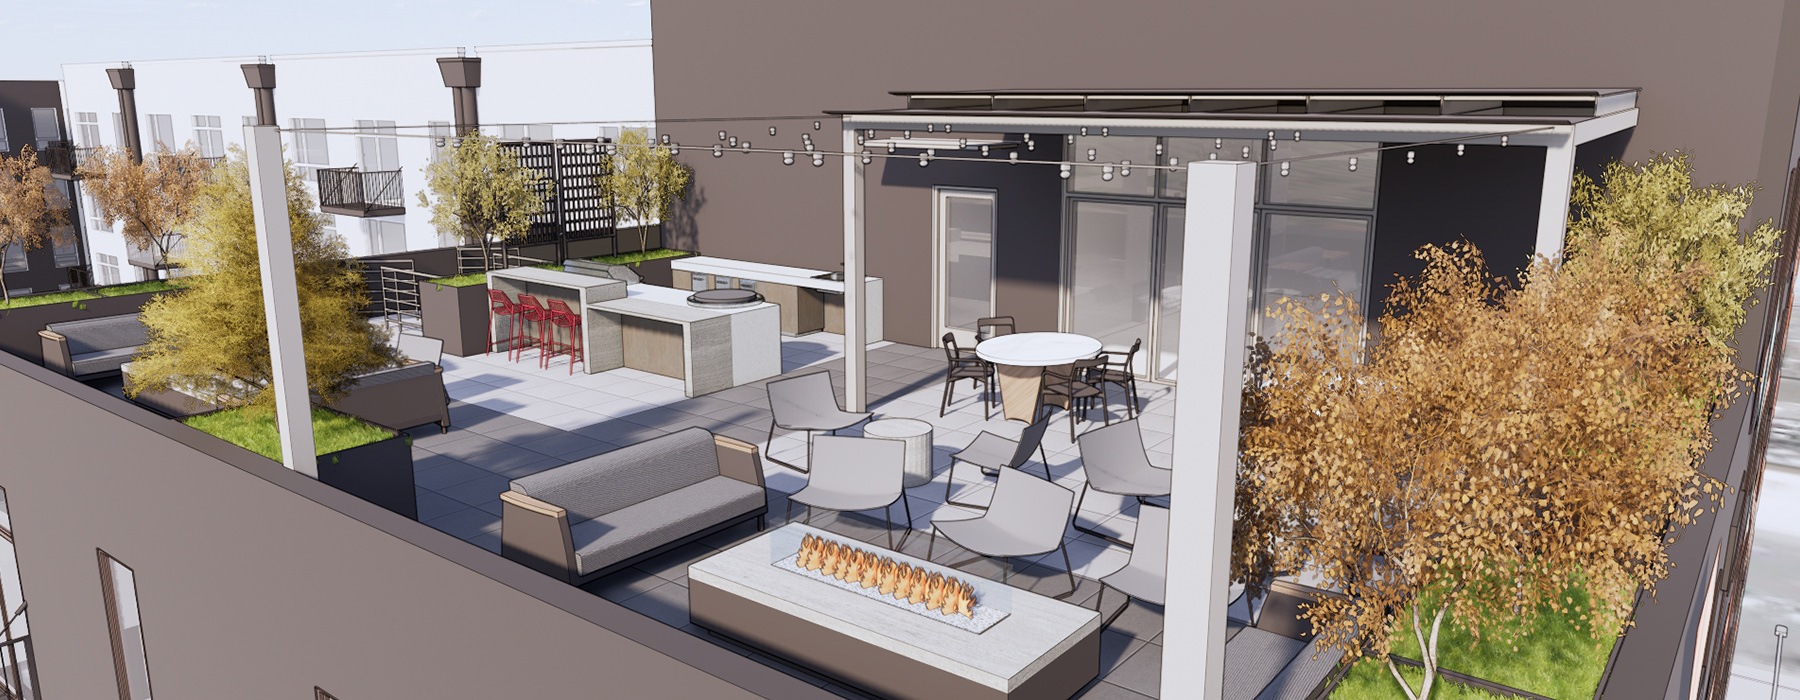 rendering of rooftop outdoor lounge